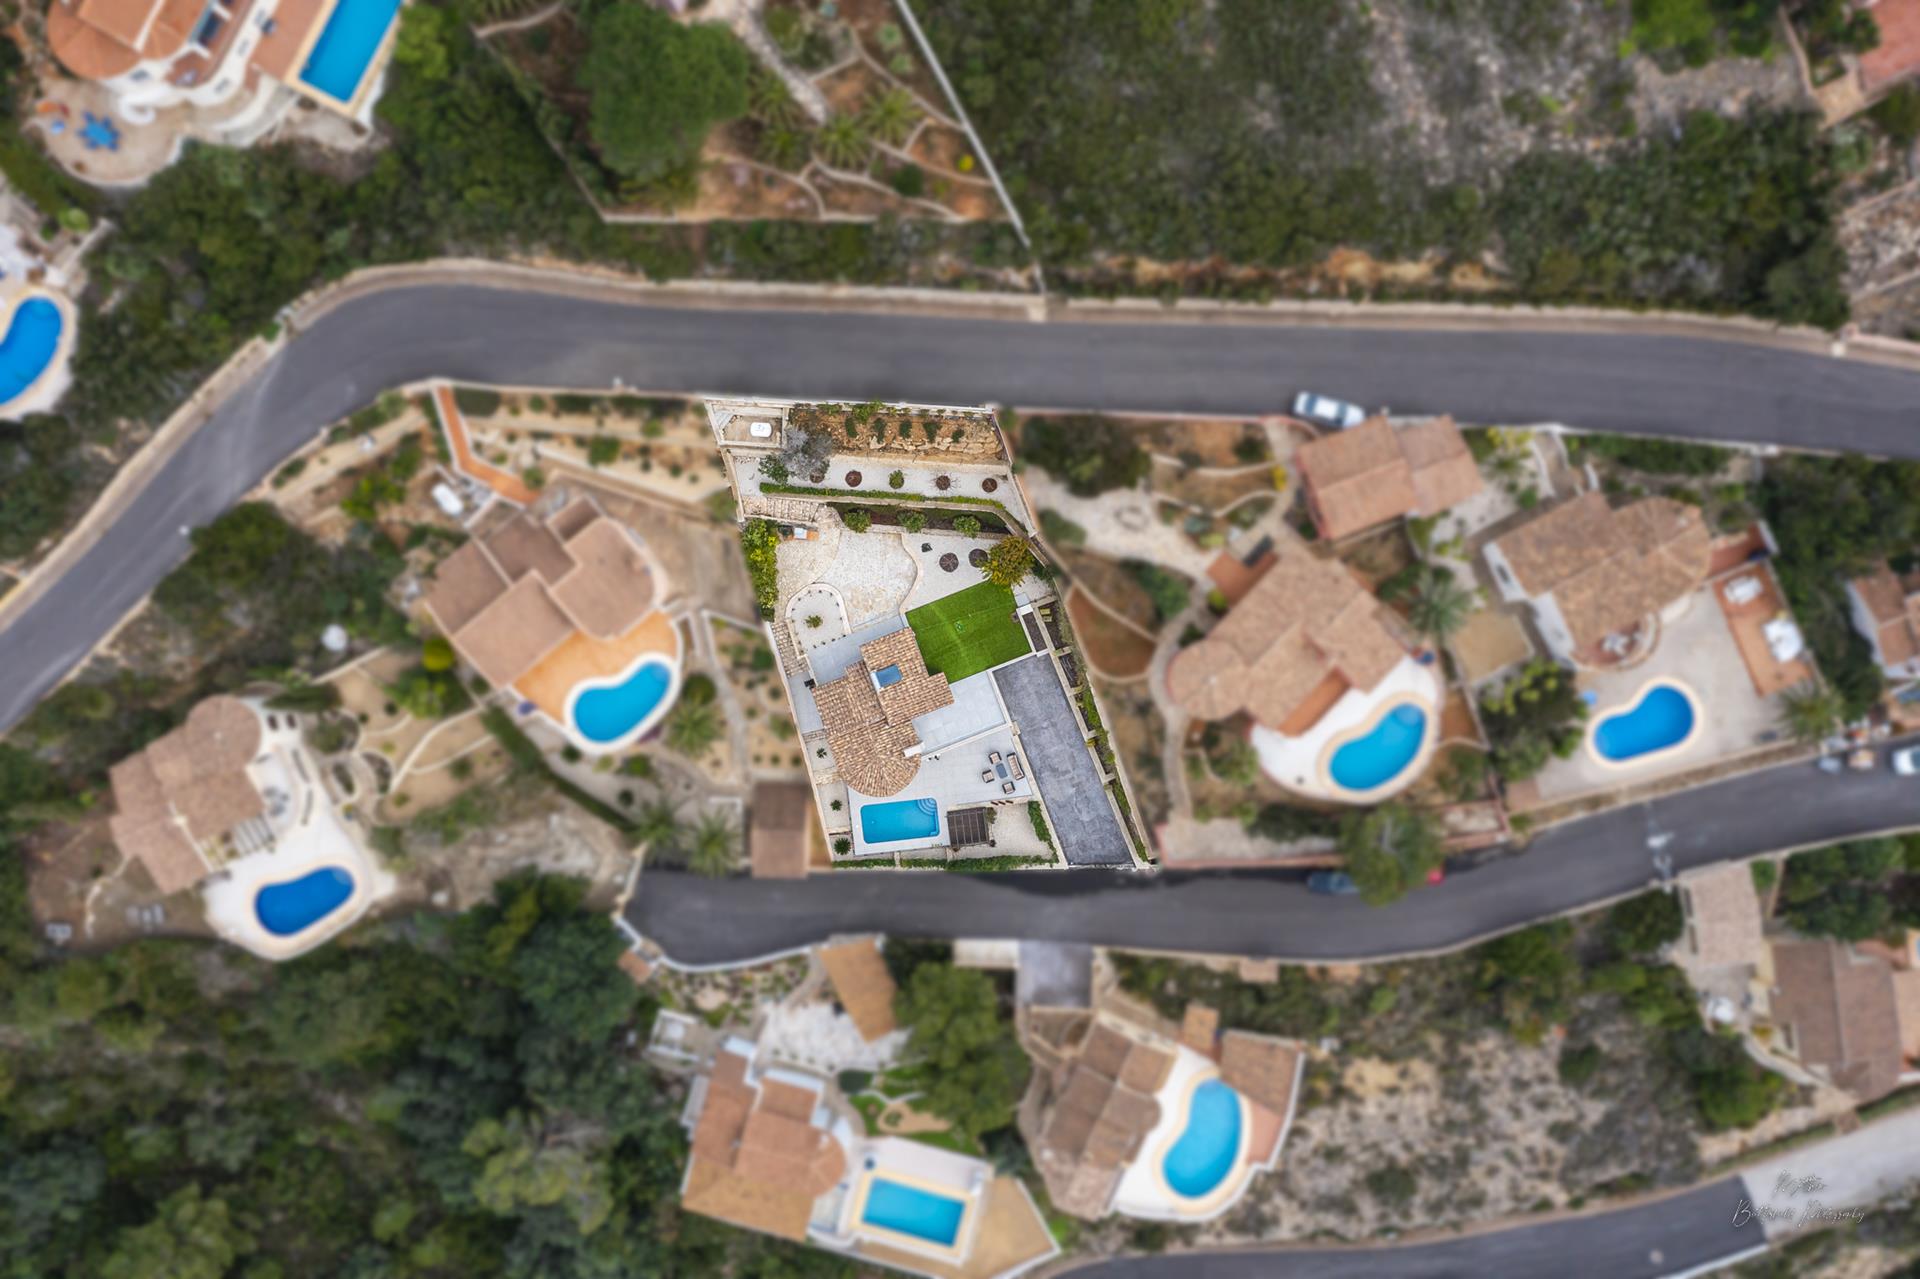 Villa ristrutturata con piscina privata e garage